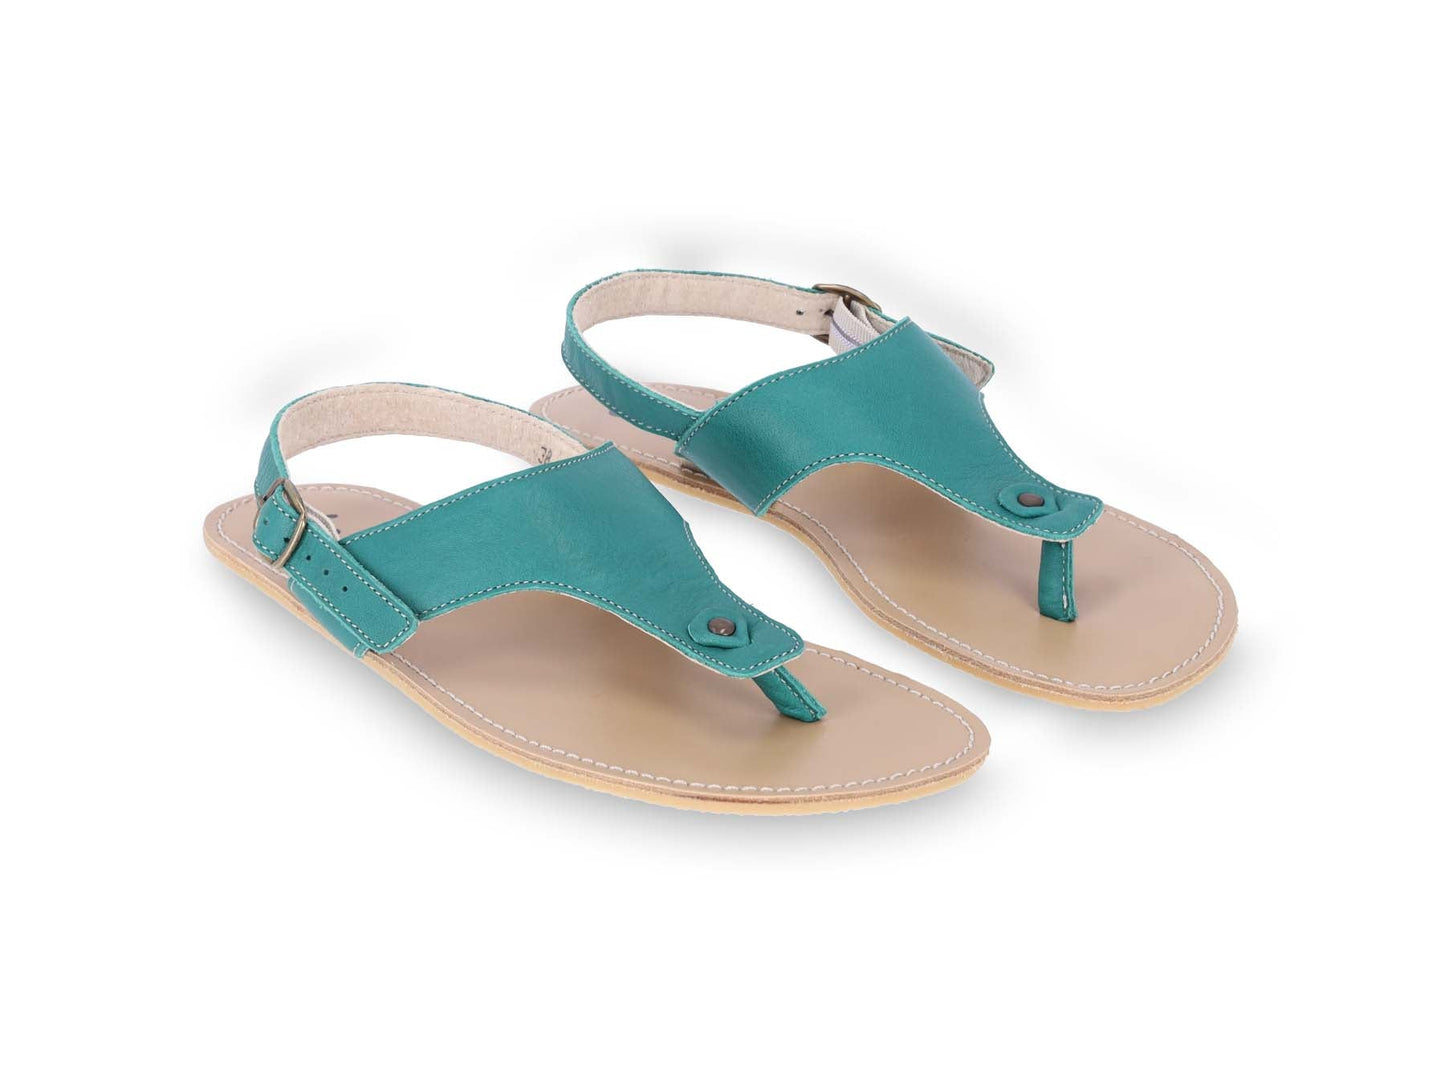 Barefoot Sandals - Be Lenka Promenade - Green-Be Lenka-Cacles Barefoot